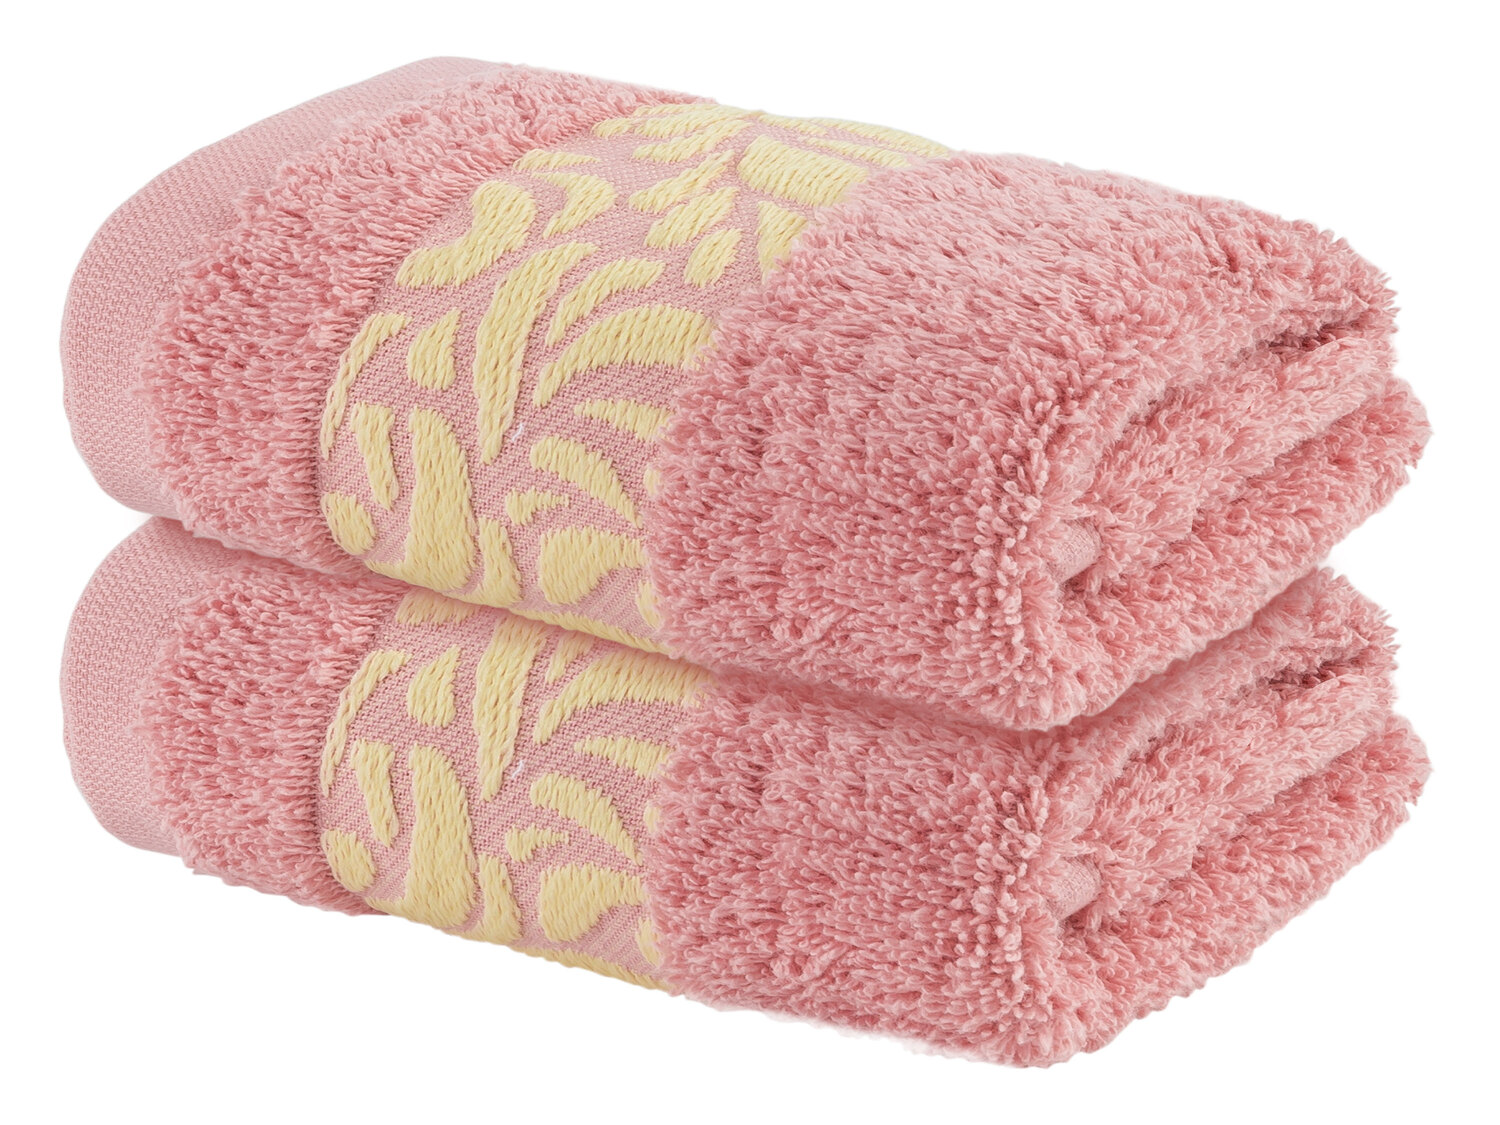 Ręczniki frottè 30 x 50 cm, 2 szt.* Meradiso, cena 6,99 PLN 
* Artykuł dostępny ...